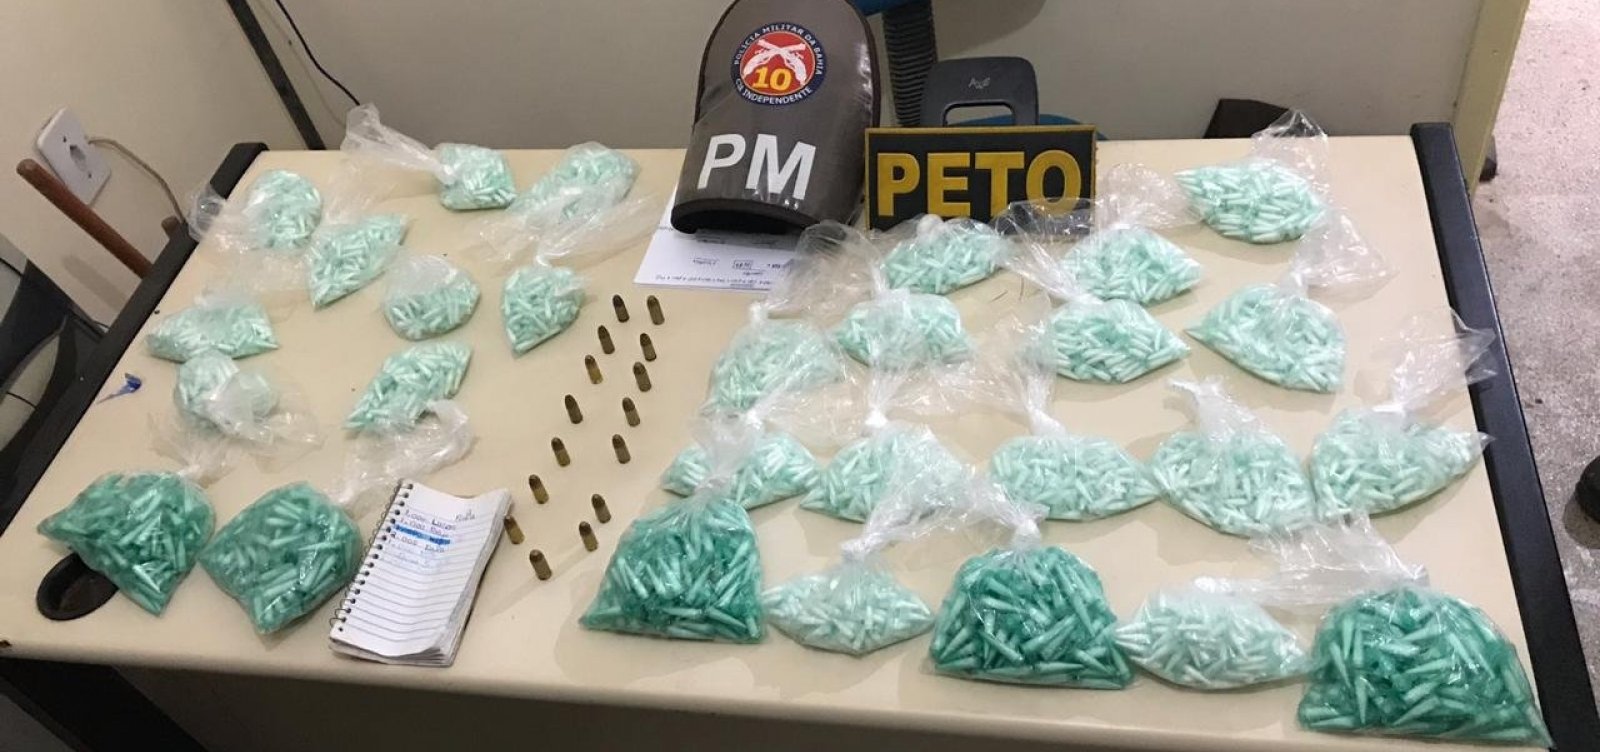 Polícia apreende mais de 4 mil pinos de cocaína; dois suspeitos foram presos